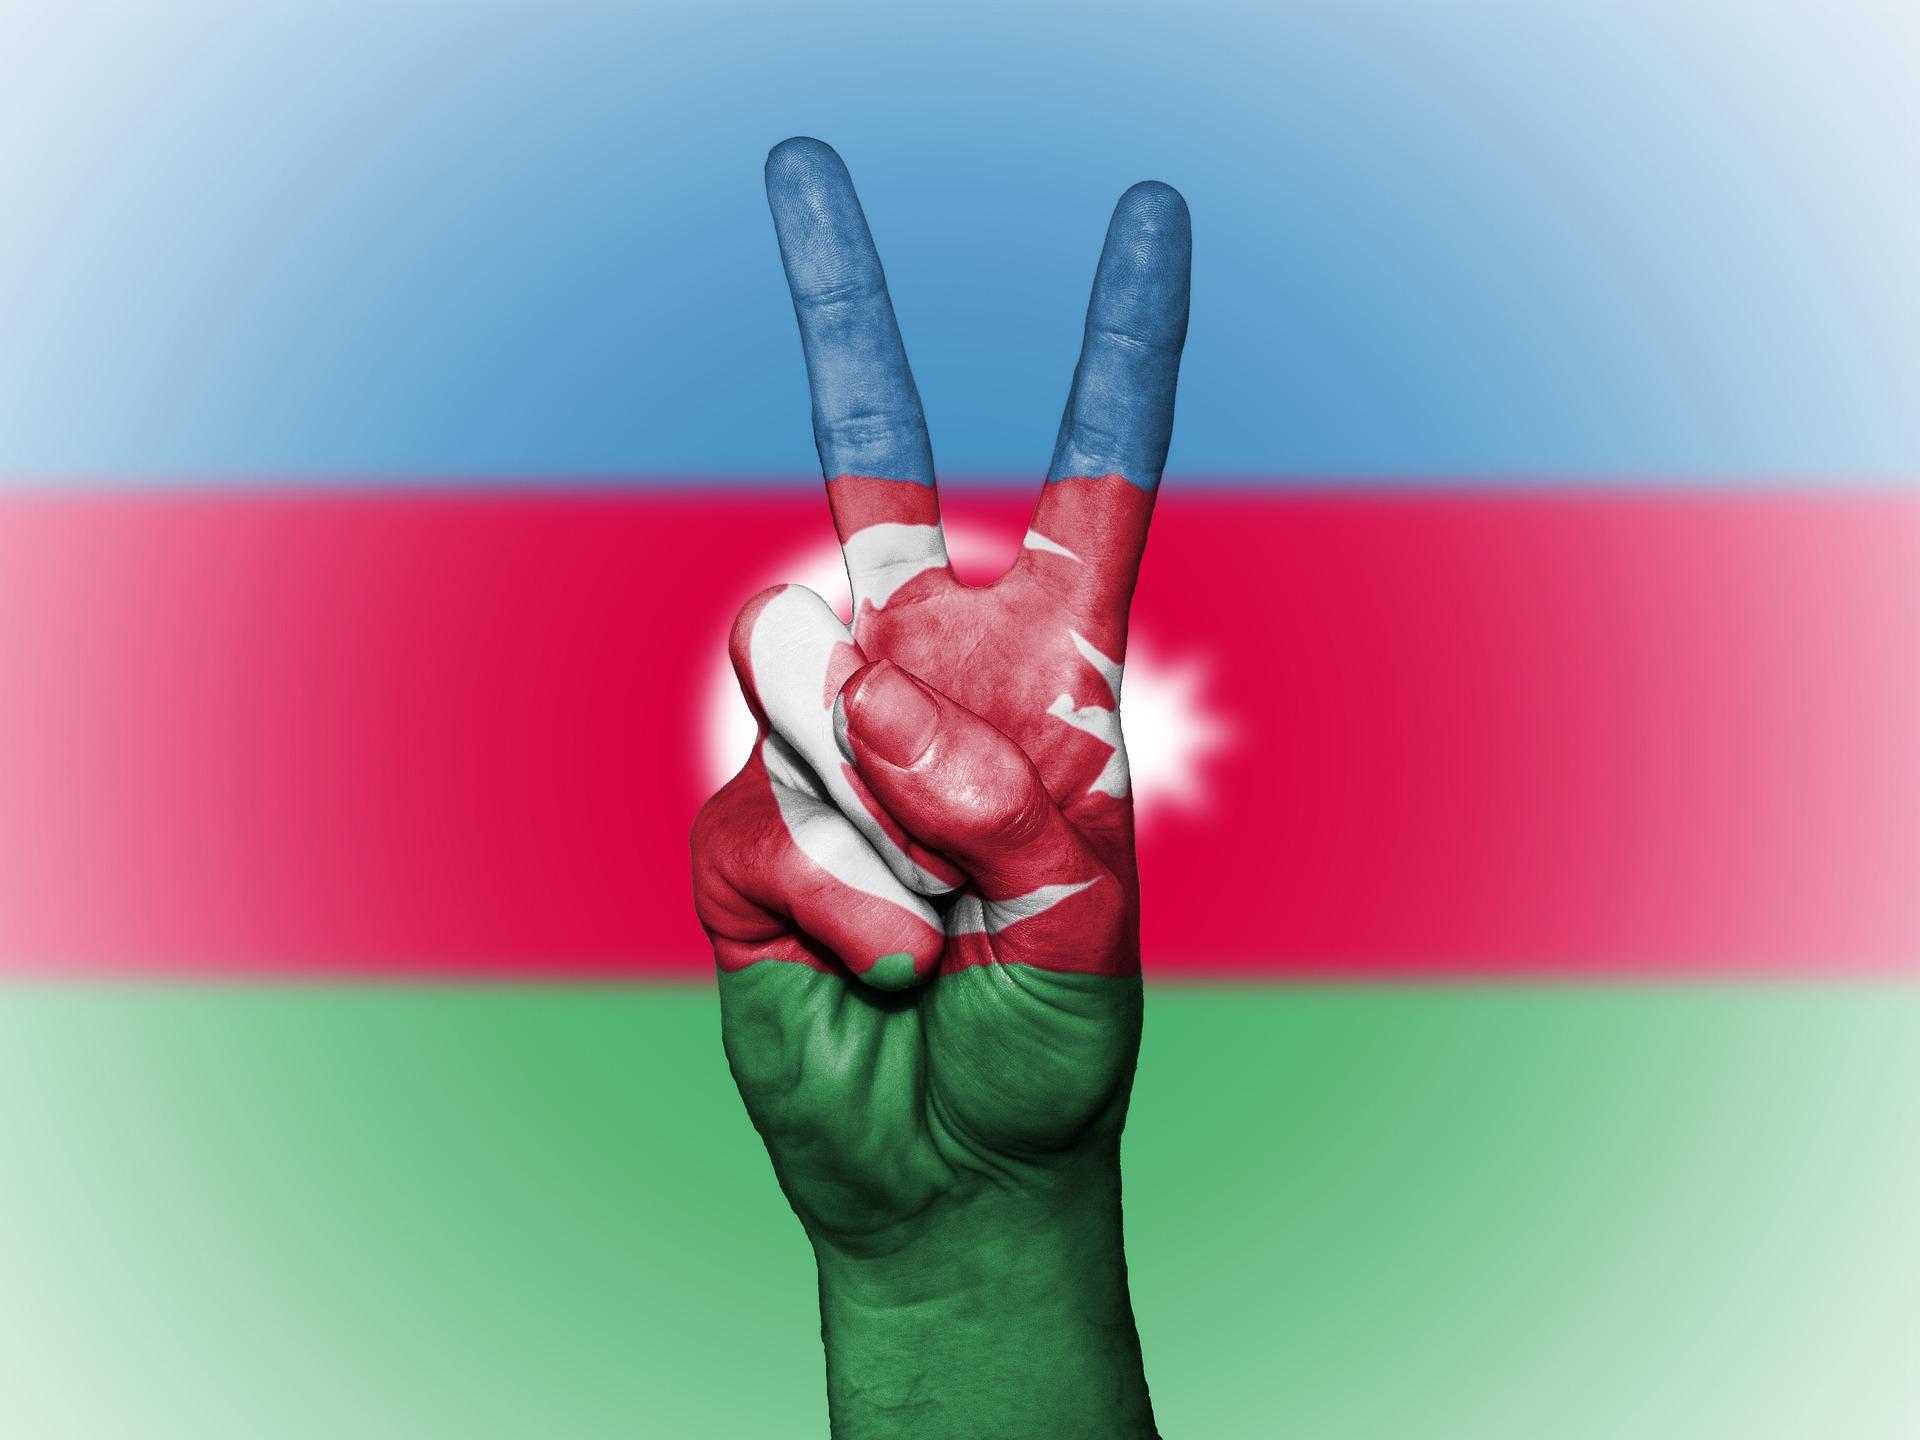 Bandiera Azerbaijan